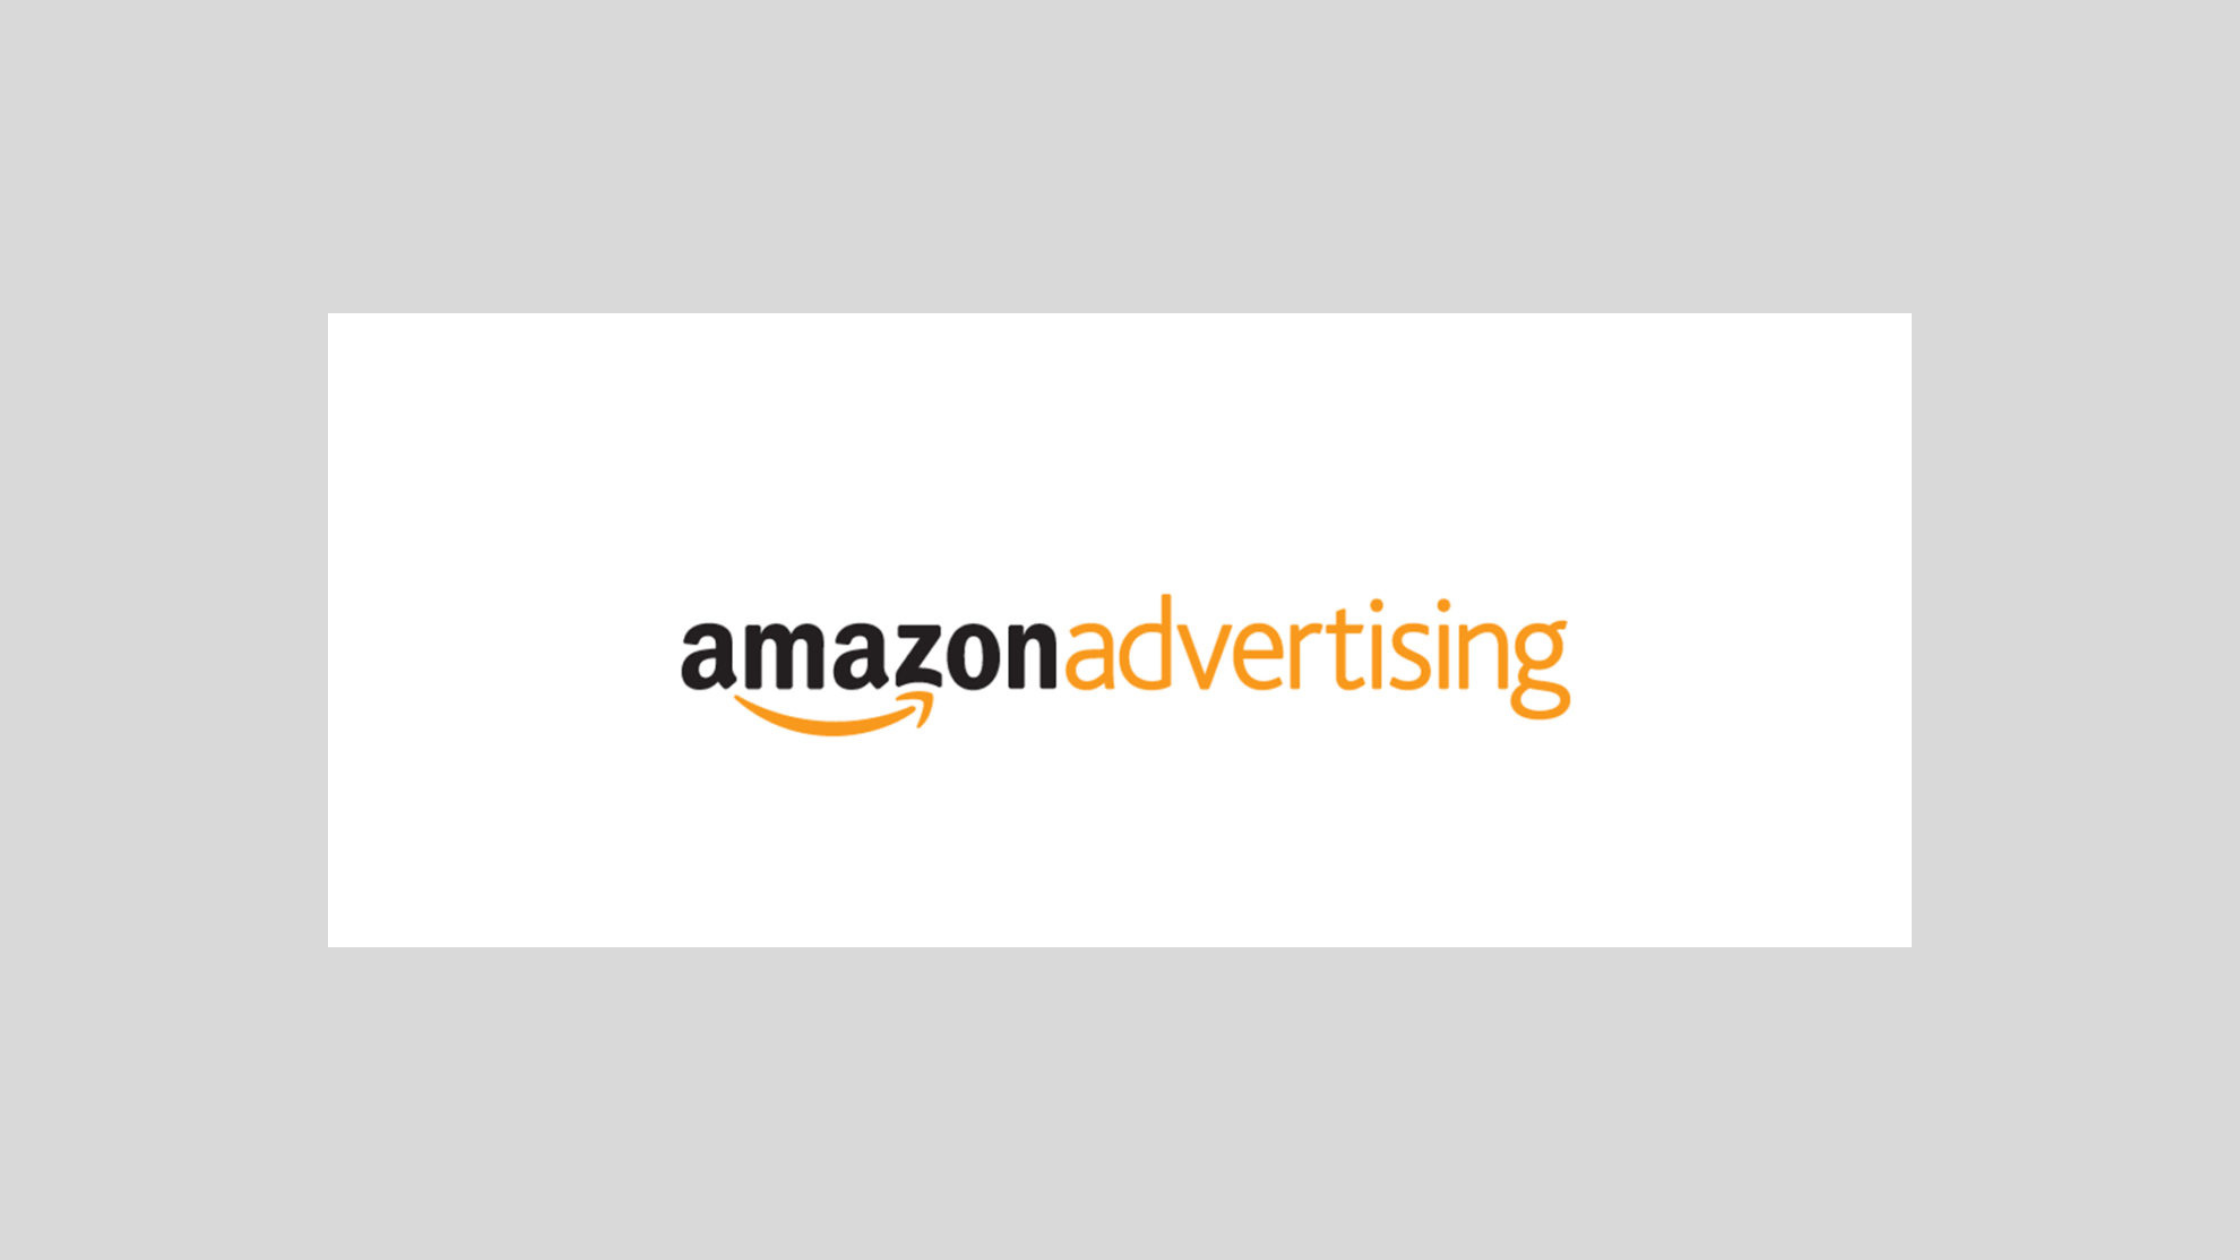 Amazon Advertising Platform (AAP)